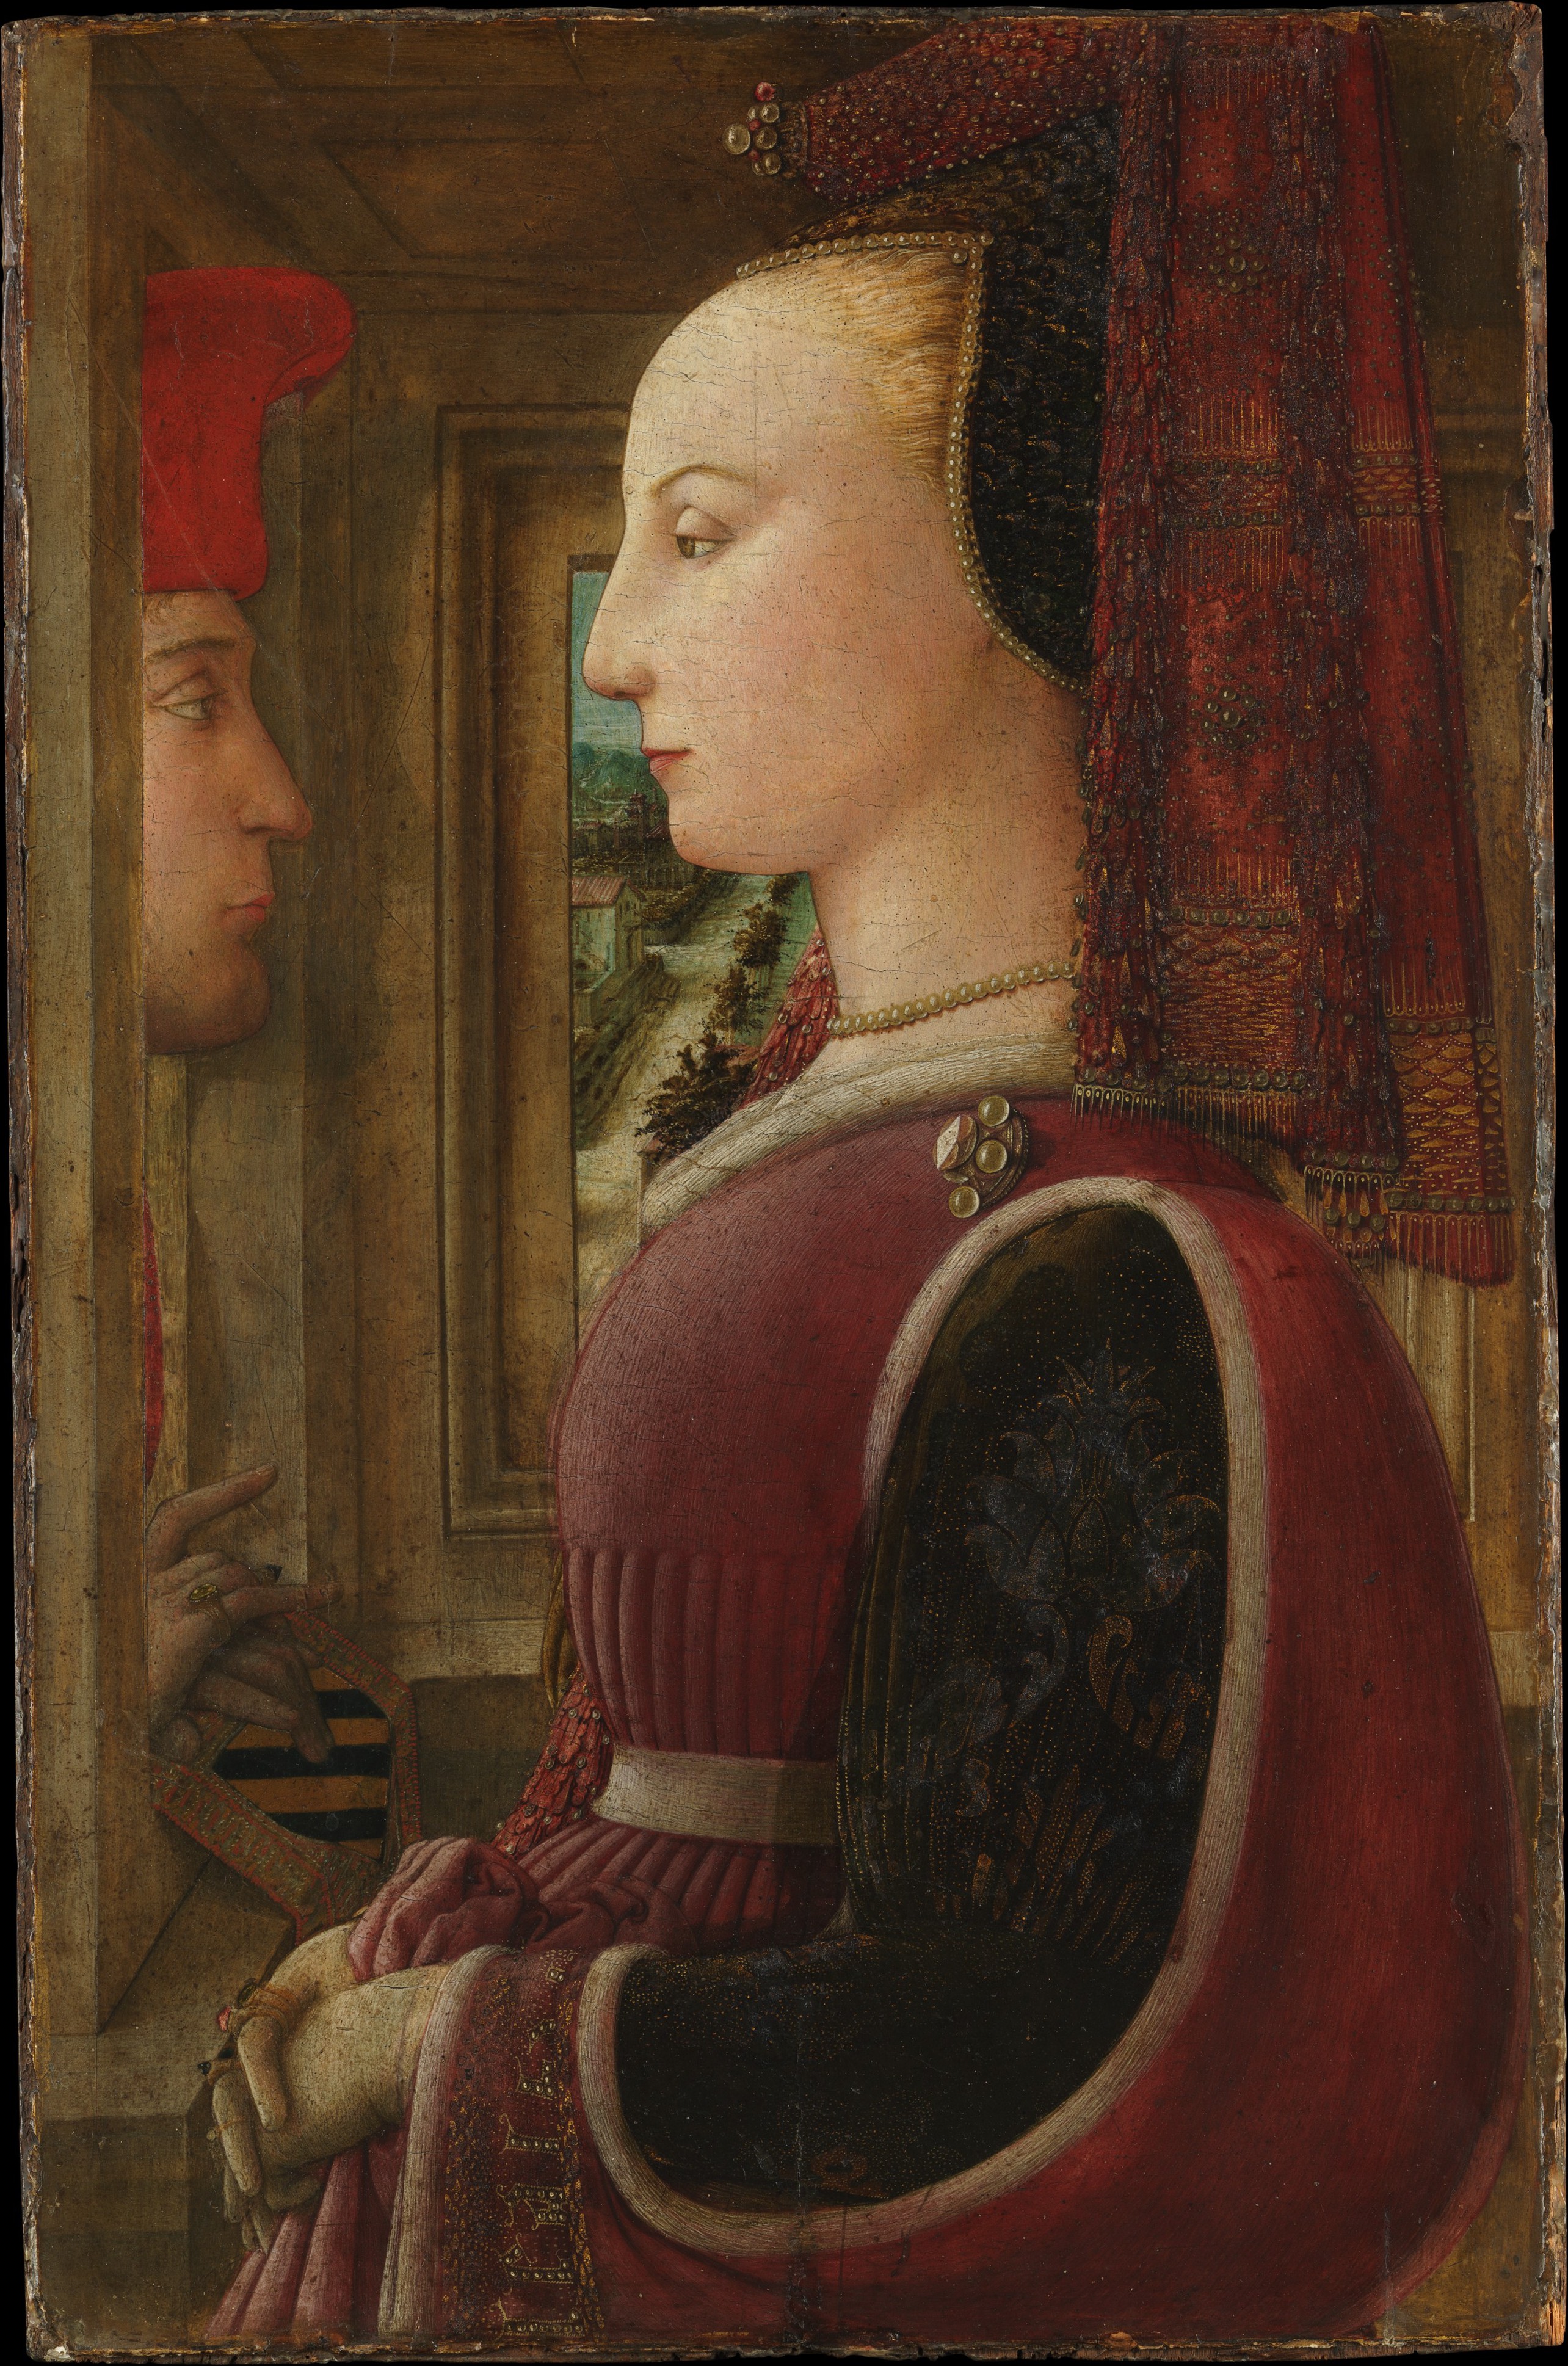 Porträt einer Frau und eines Mannes in einer Fensternische by Fra Filippo Lippi - ca. 1440 - 64,1 x 41,9 cm Metropolitan Museum of Art